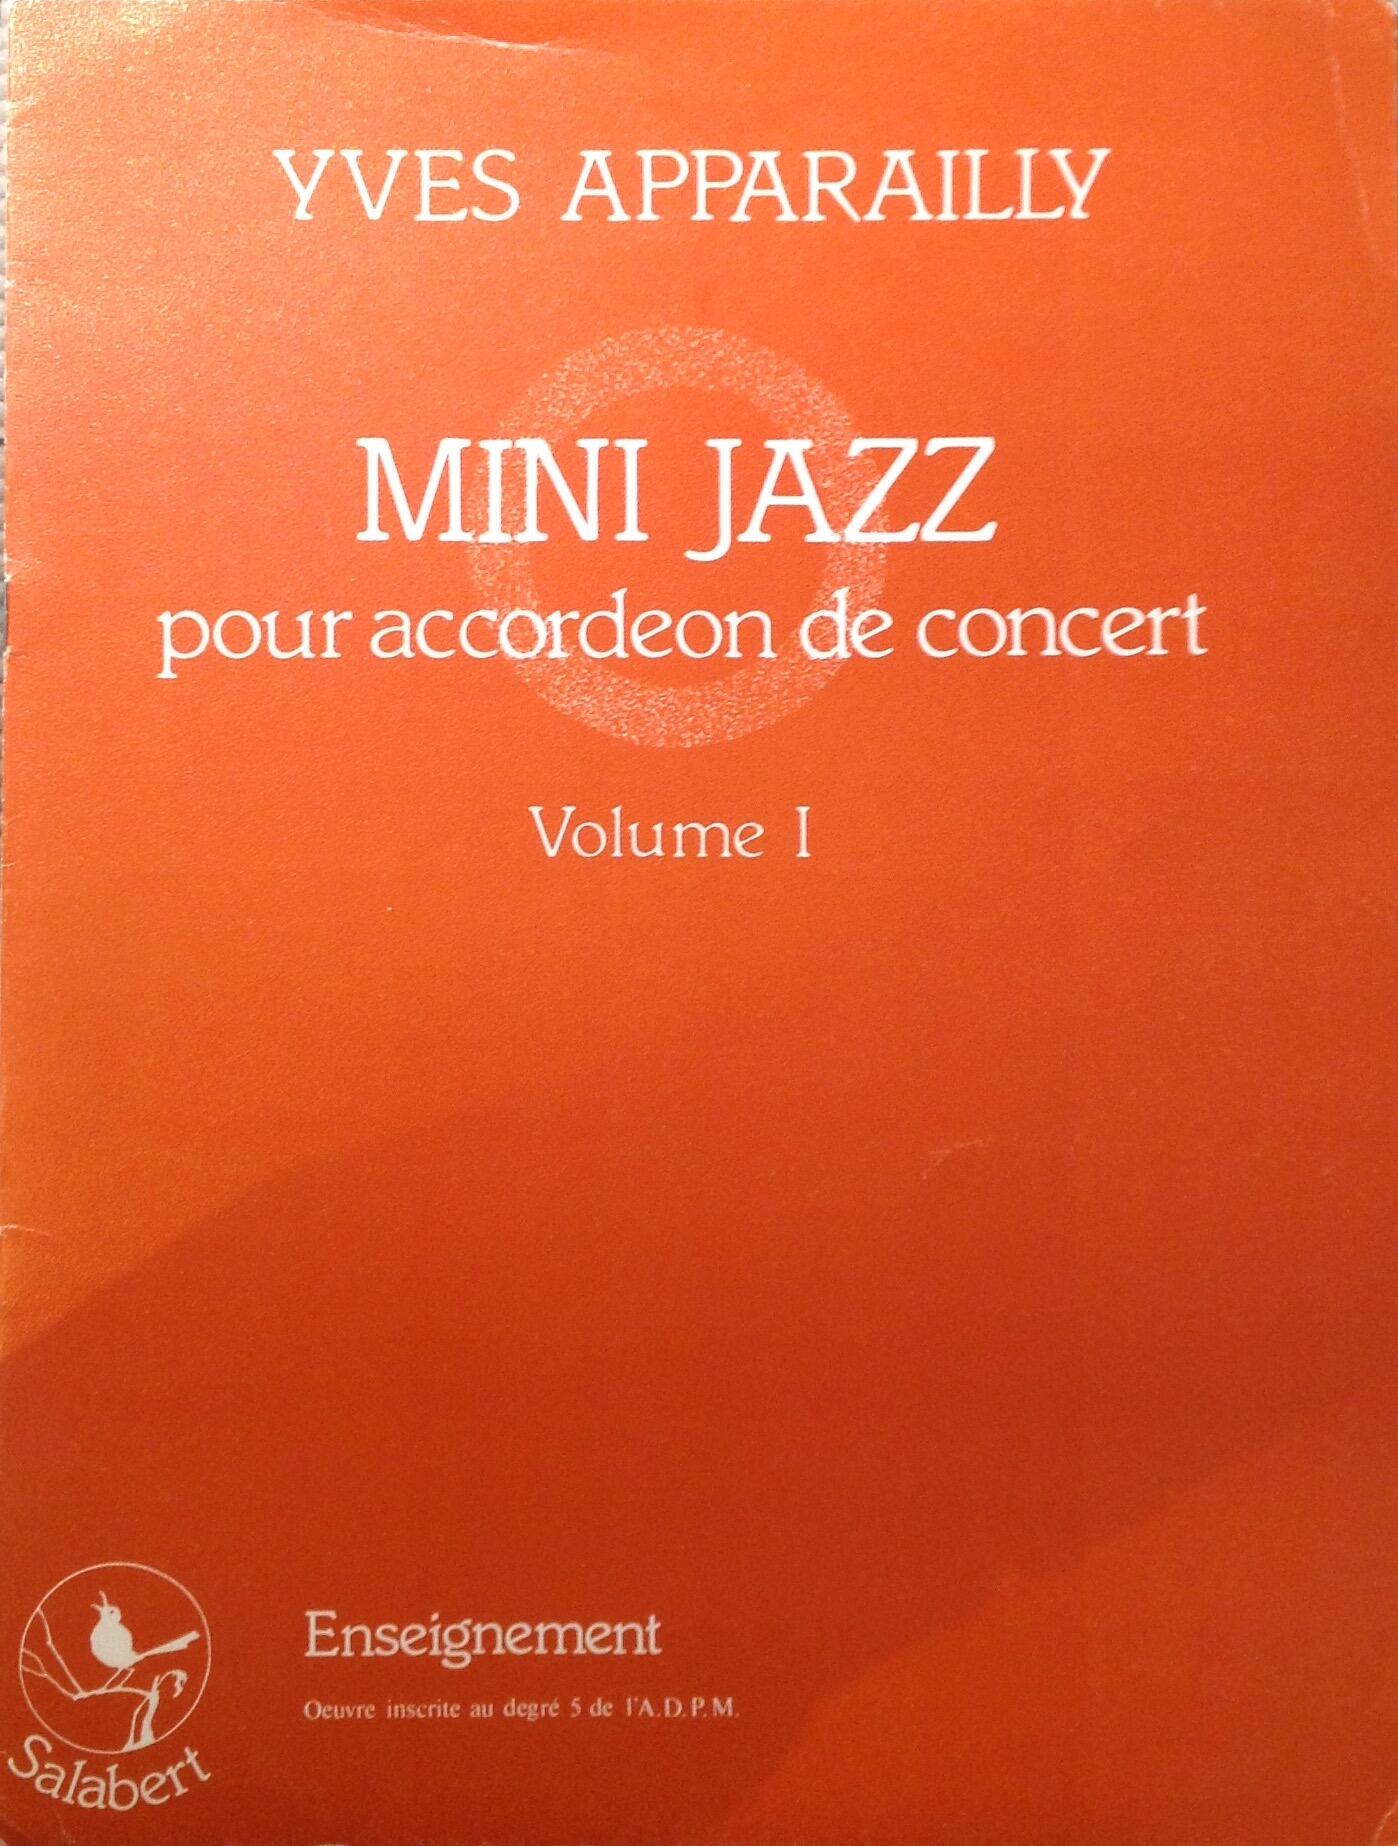 Mini Jazz vol. 1 : photo 1